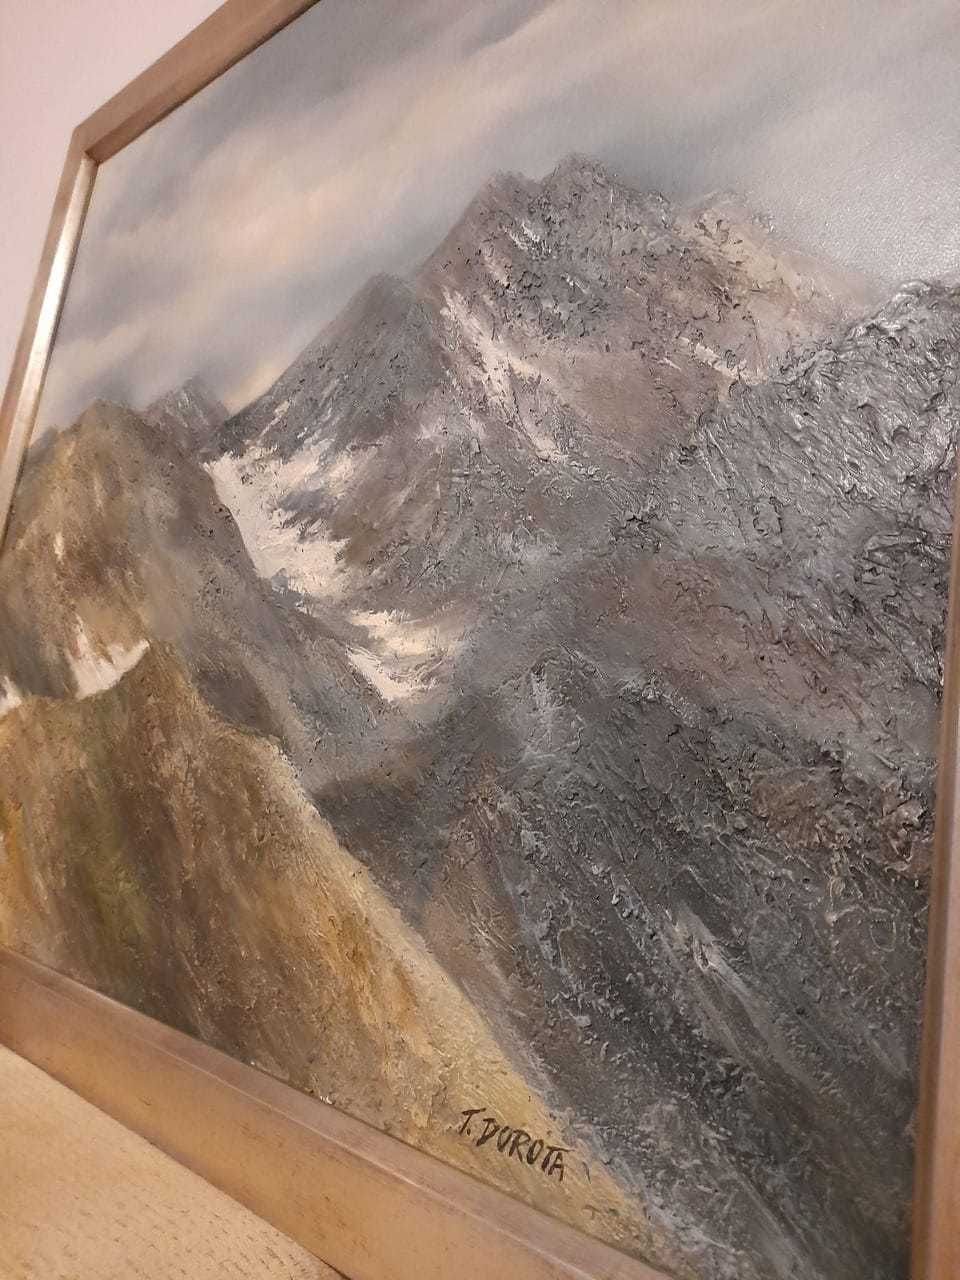 Oryginalny obraz na płótnie "Pejzaż górski" (Tadeusz Dorota)